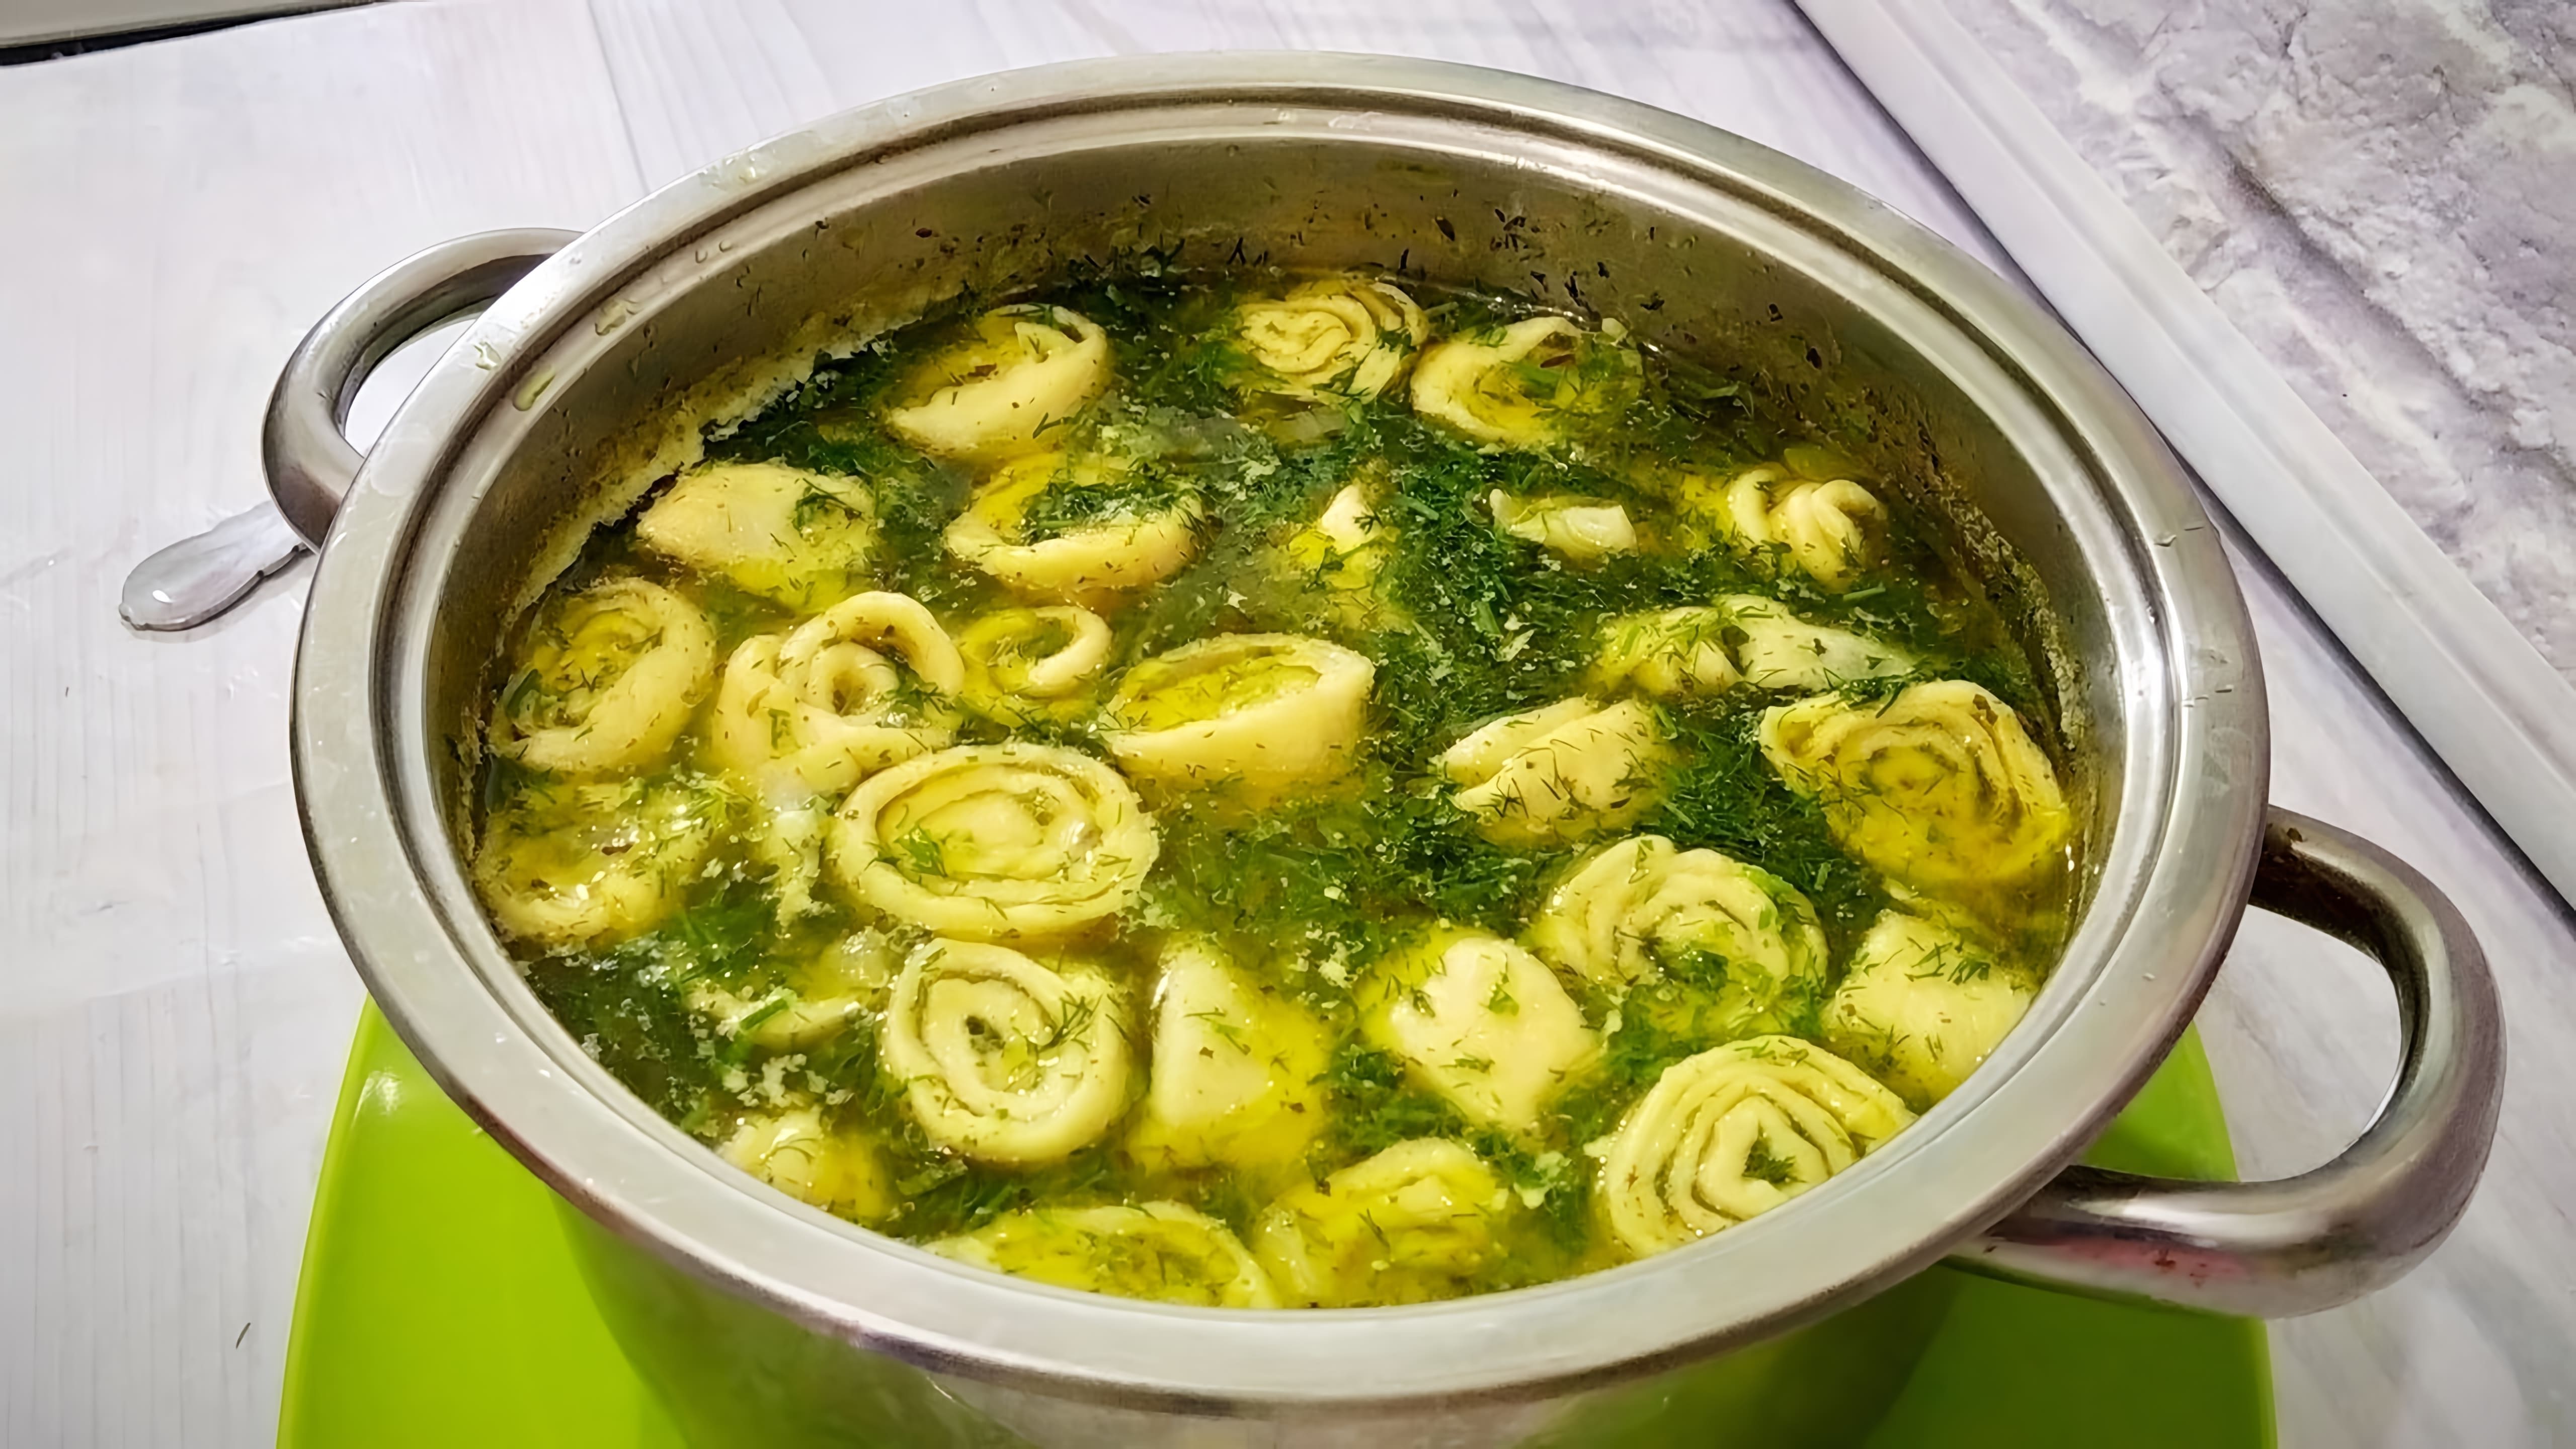 В этом видео демонстрируется процесс приготовления супа с чесночными галушками